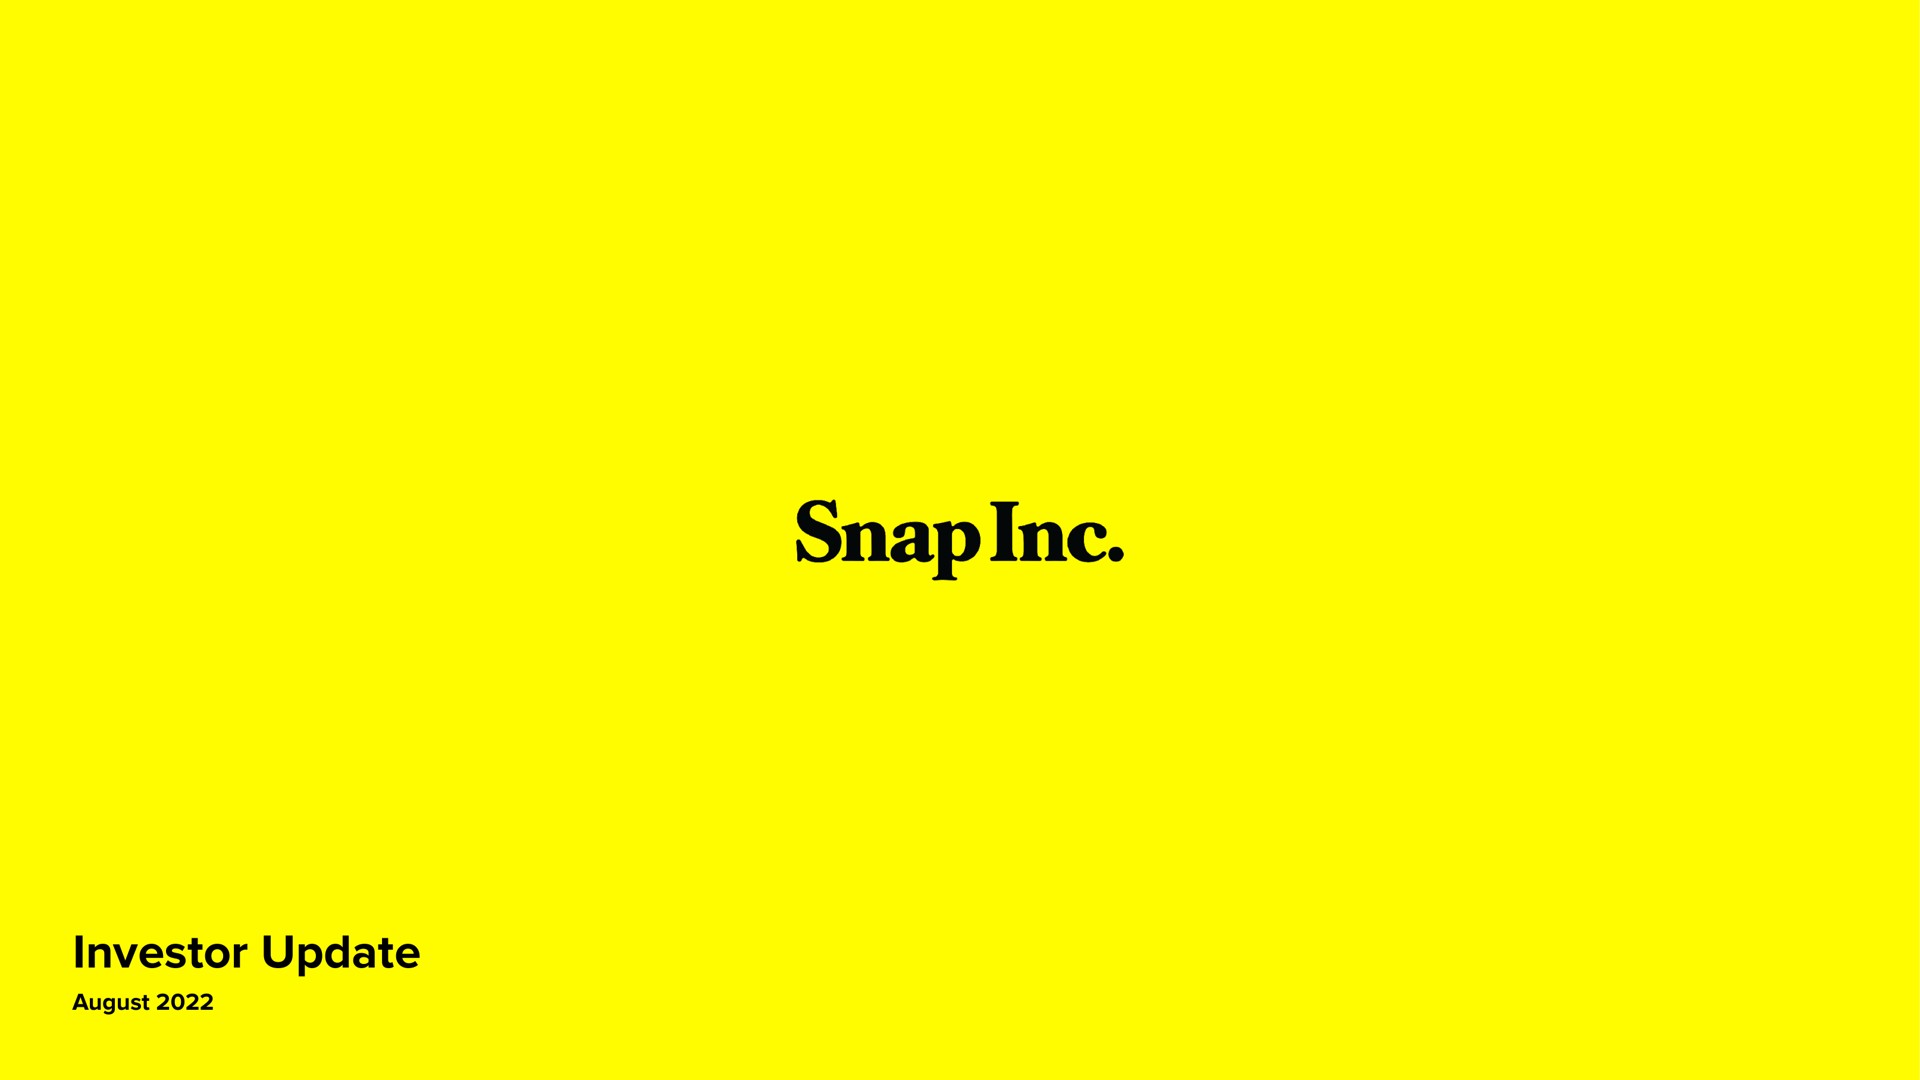 snap | Snap Inc